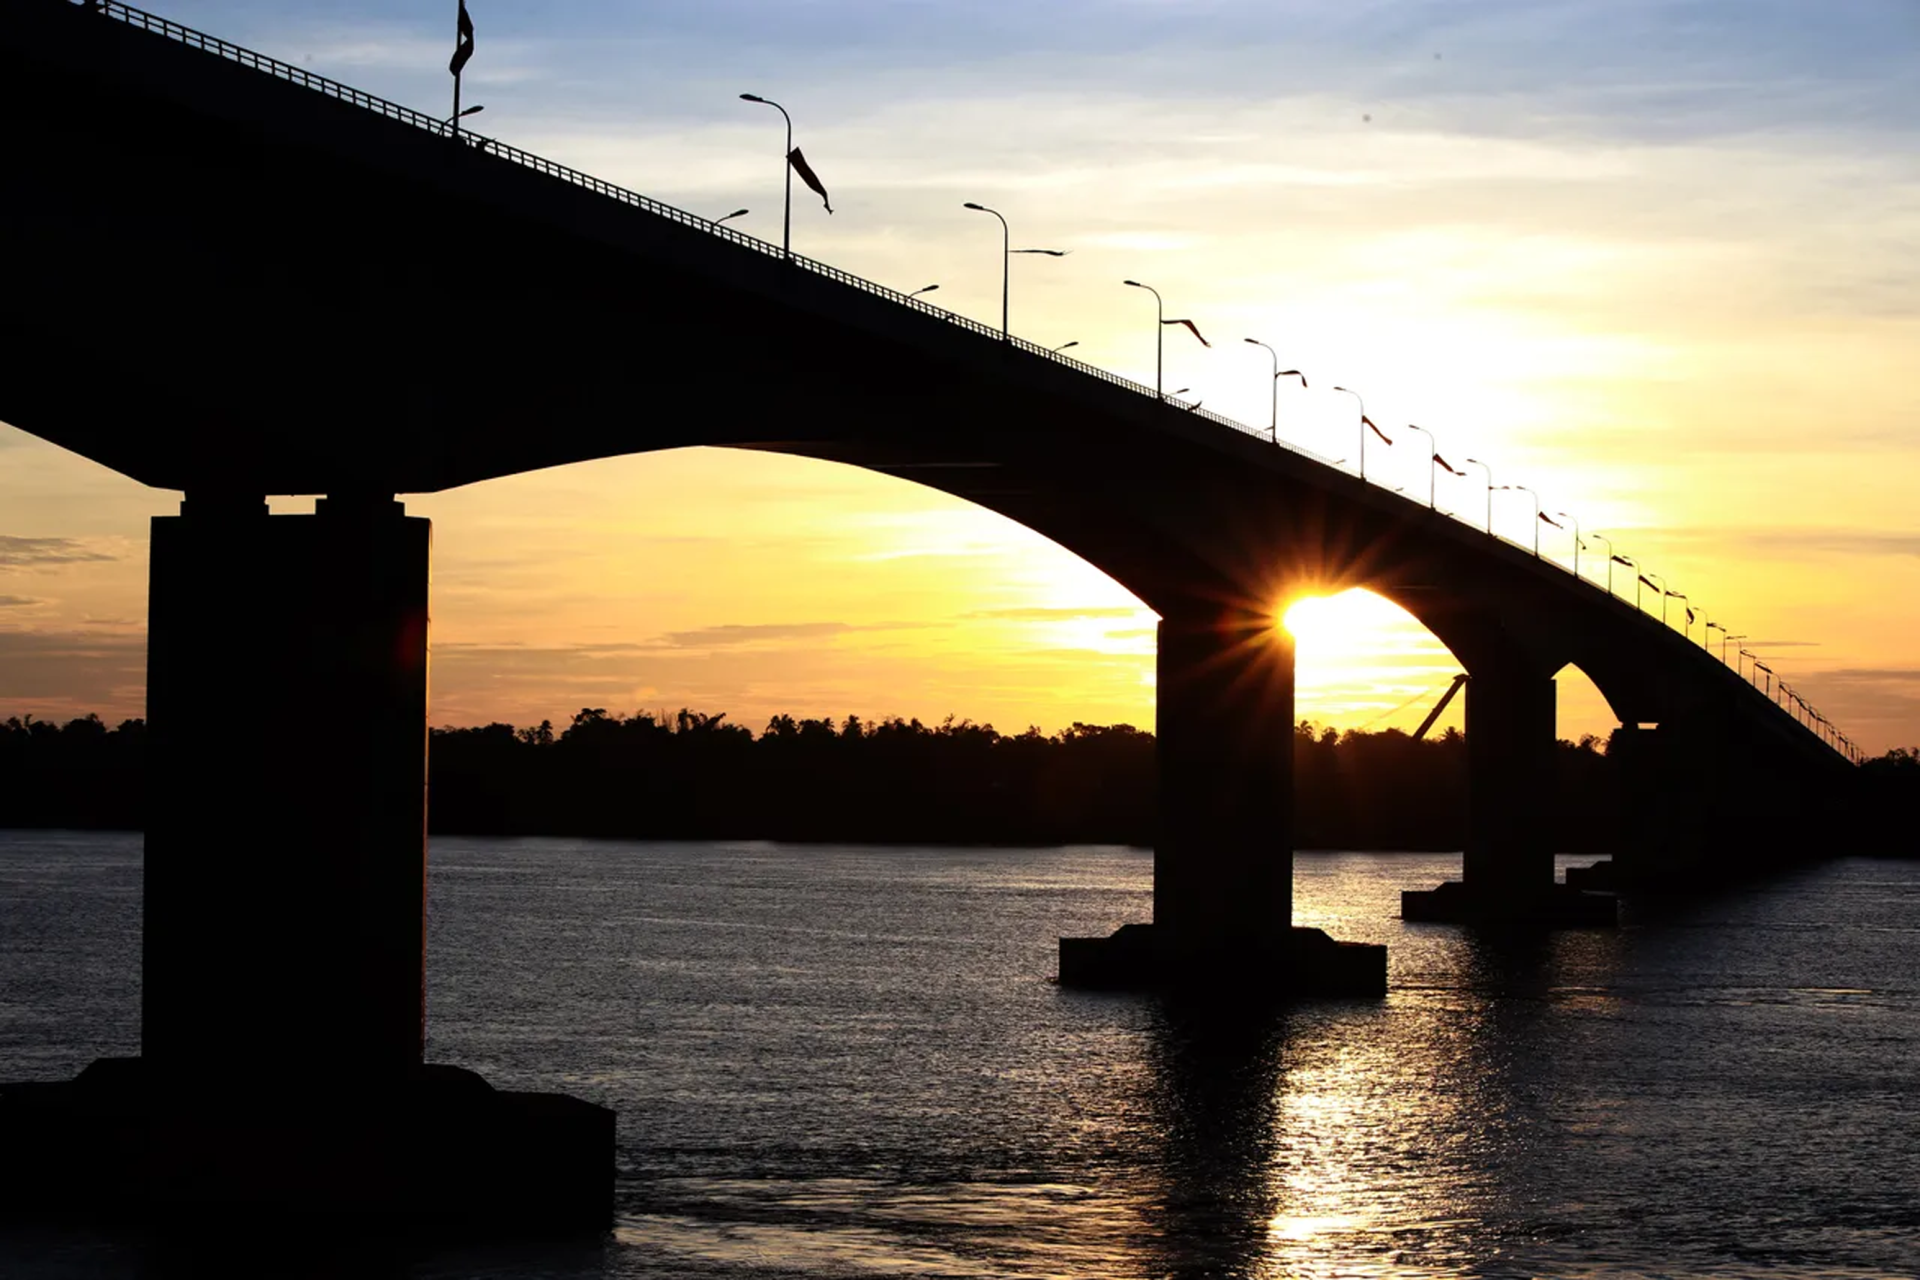 中国公司建造，跨越湄公河，连接柬埔寨斯登特朗县、格罗奇马县的“格罗奇马大桥”，又称中柬友谊大桥。